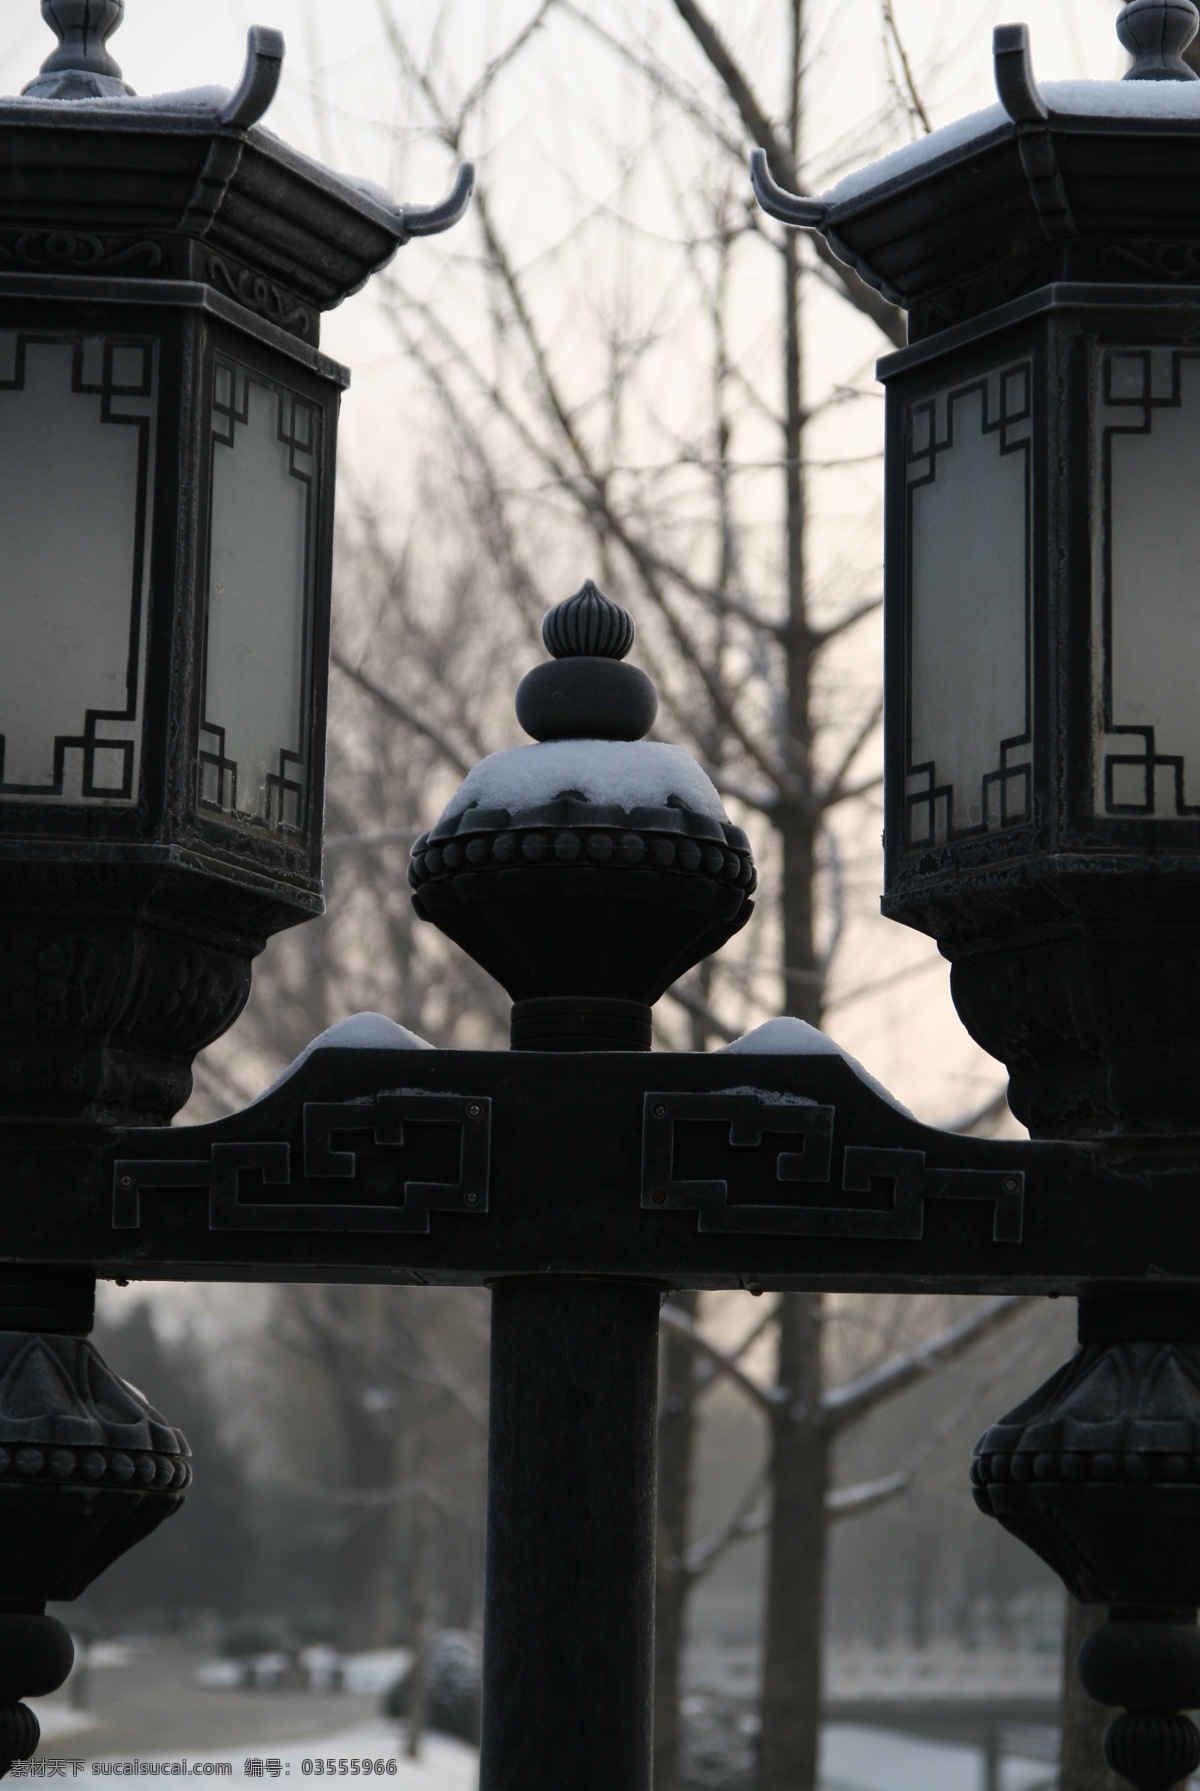 北京 小景 灯 冬天 建筑摄影 建筑园林 枯树 北京小景 装饰素材 灯饰素材